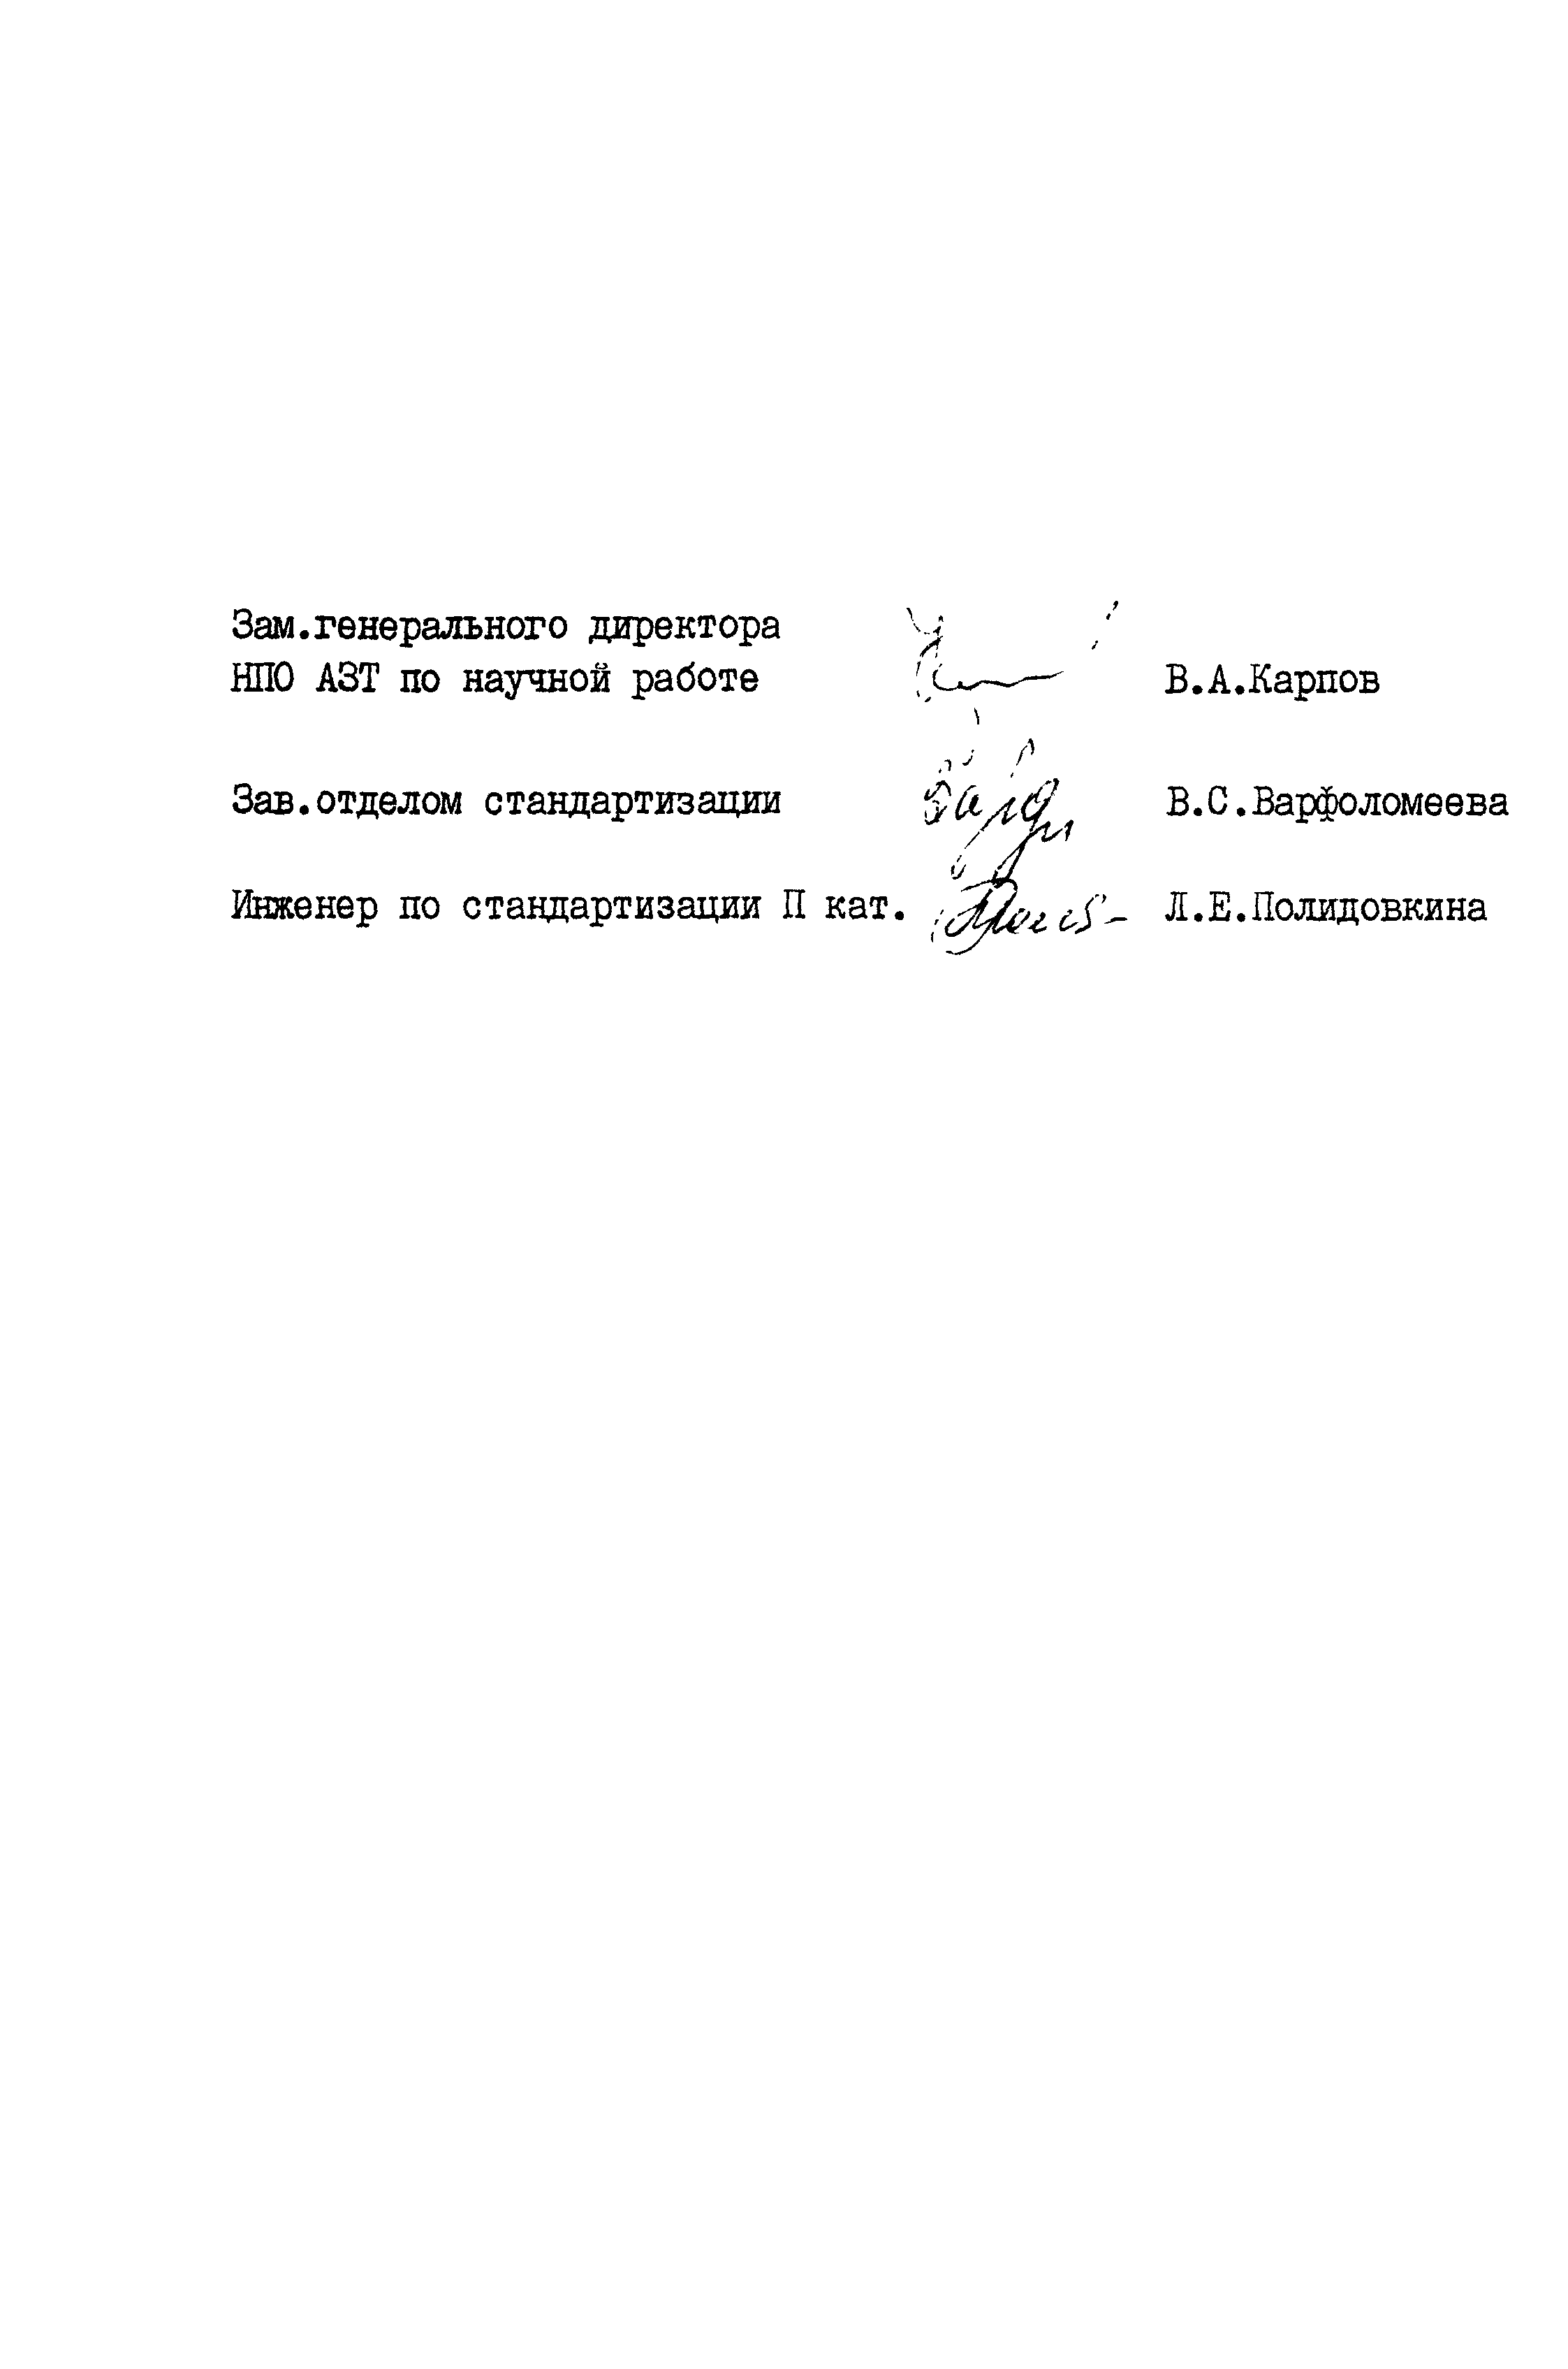 РСТ РСФСР 778-91